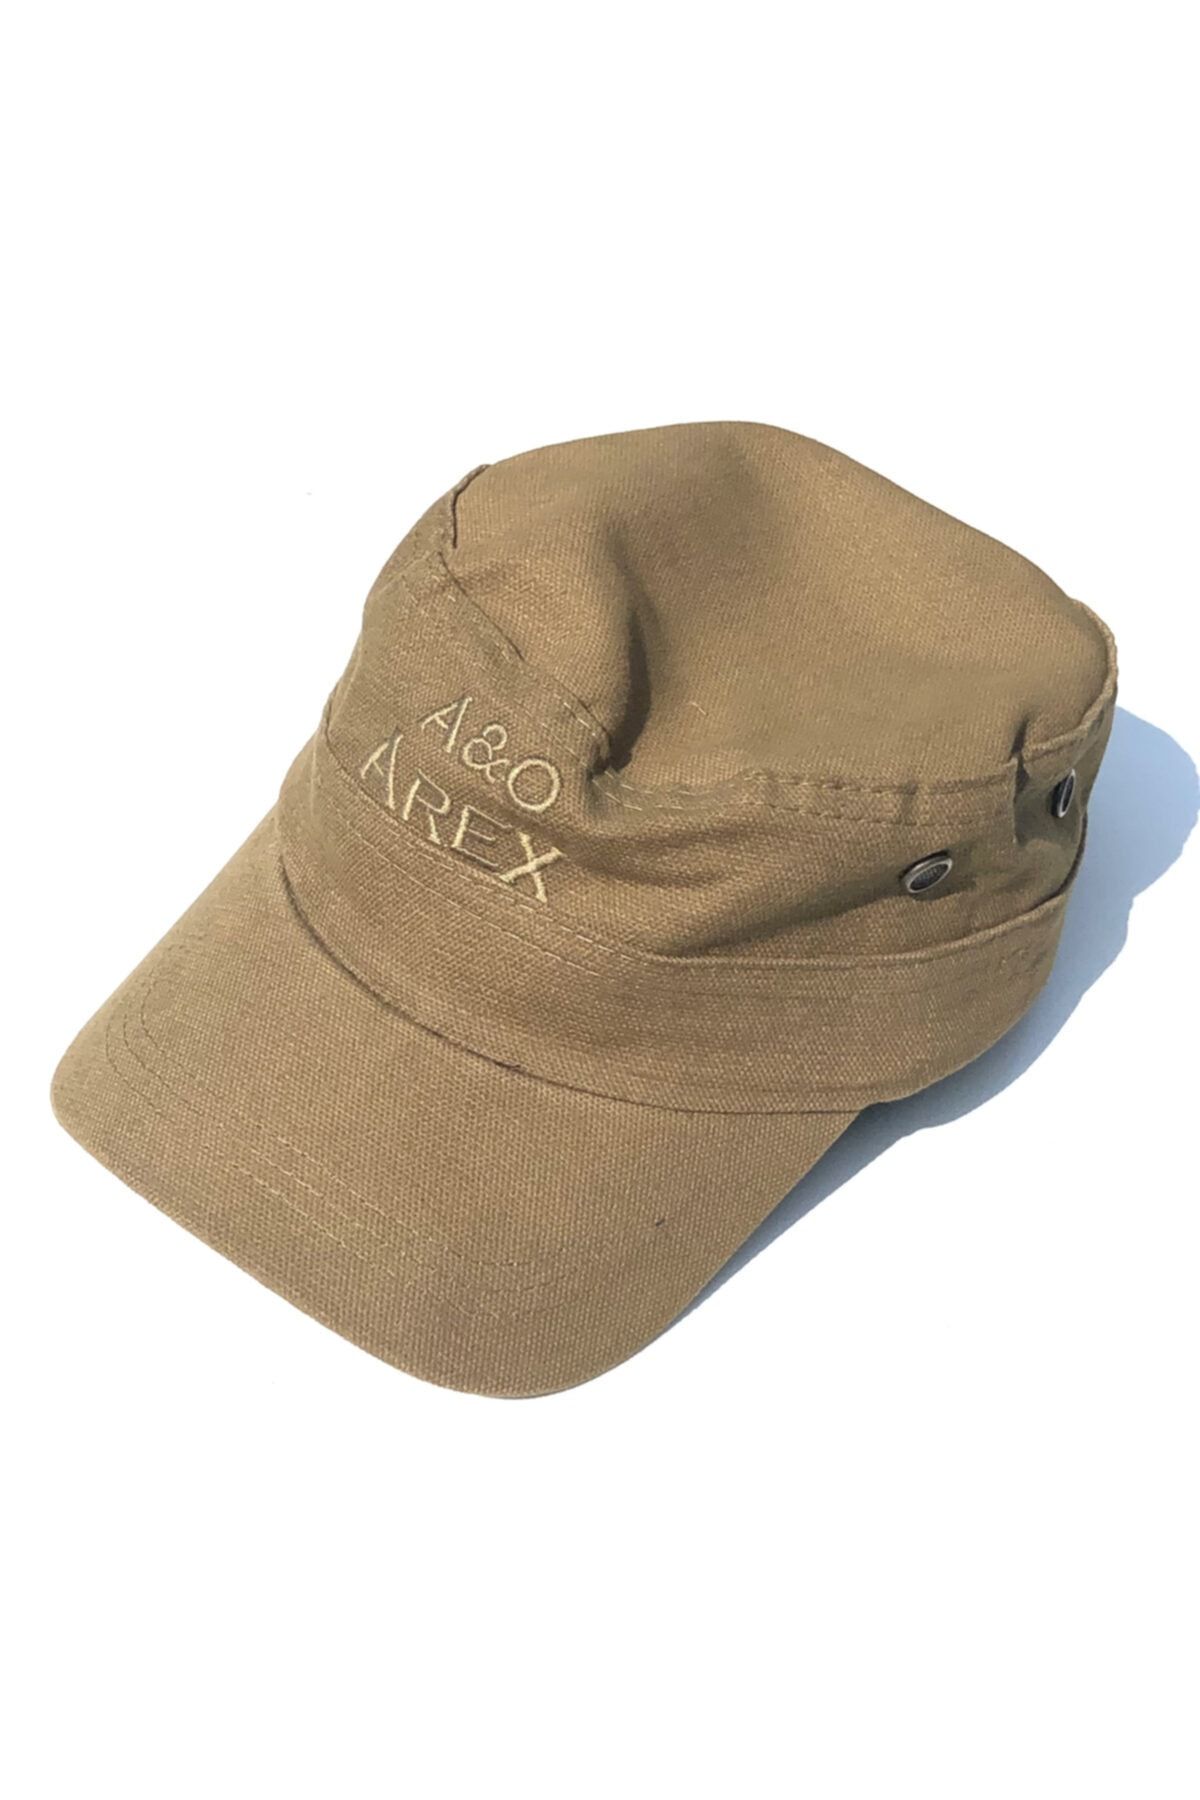 Erdinç Doğa Av Malzemeleri Arex Outdoor Taktikal Şapka